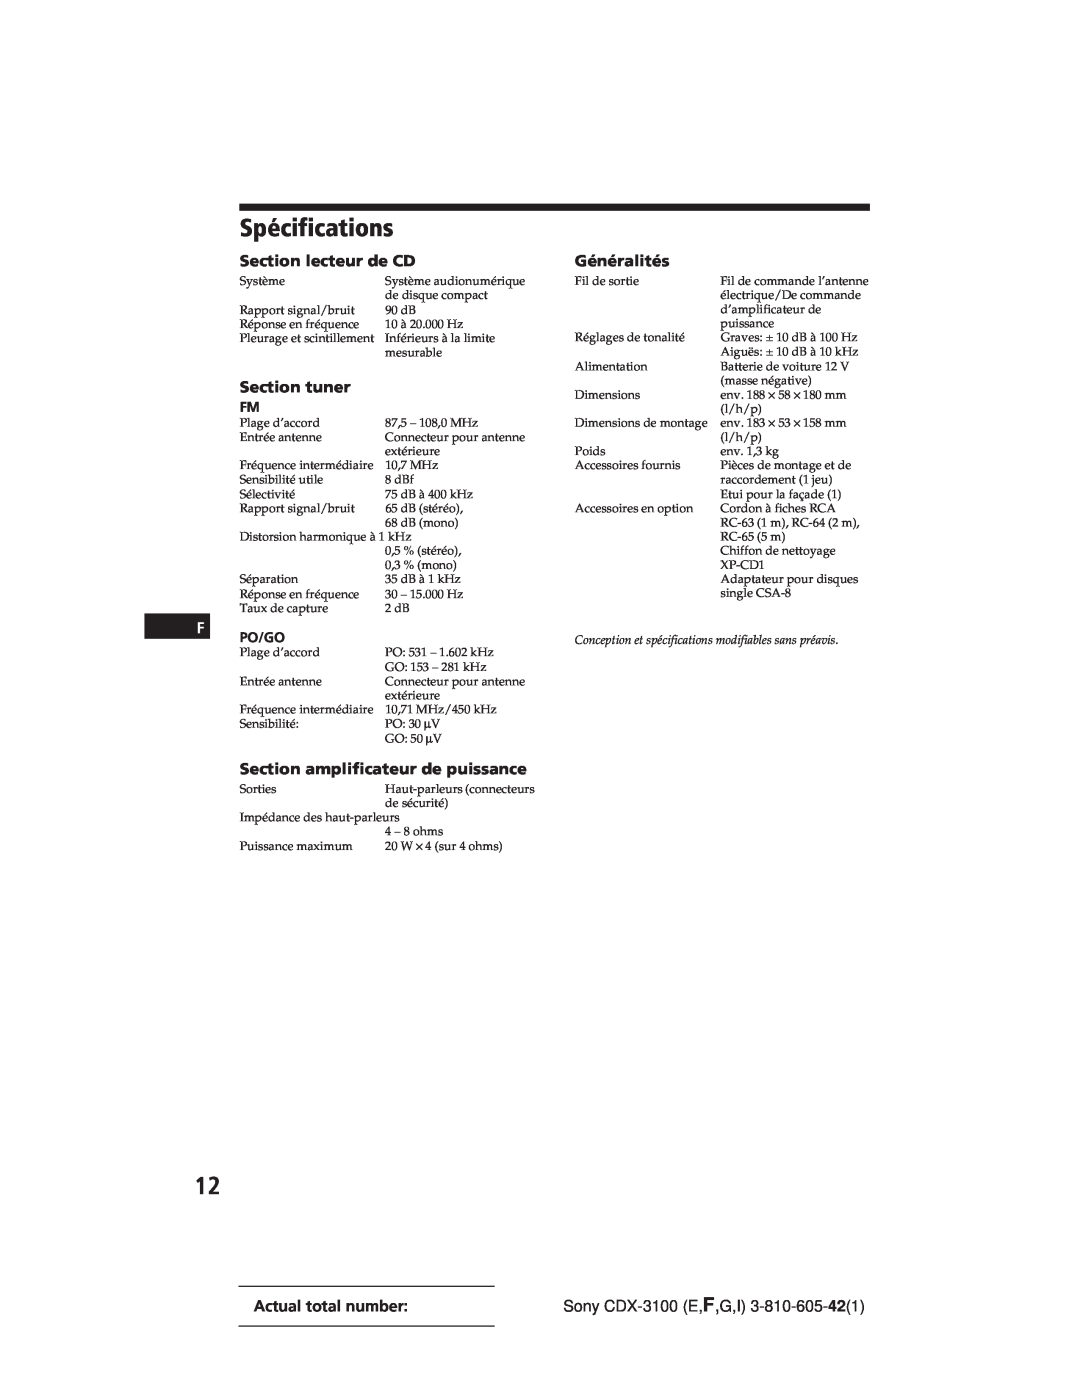 Sony CDX-3100 manual Spécifications, Section lecteur de CD, Section amplificateur de puissance, Section tuner, Généralités 